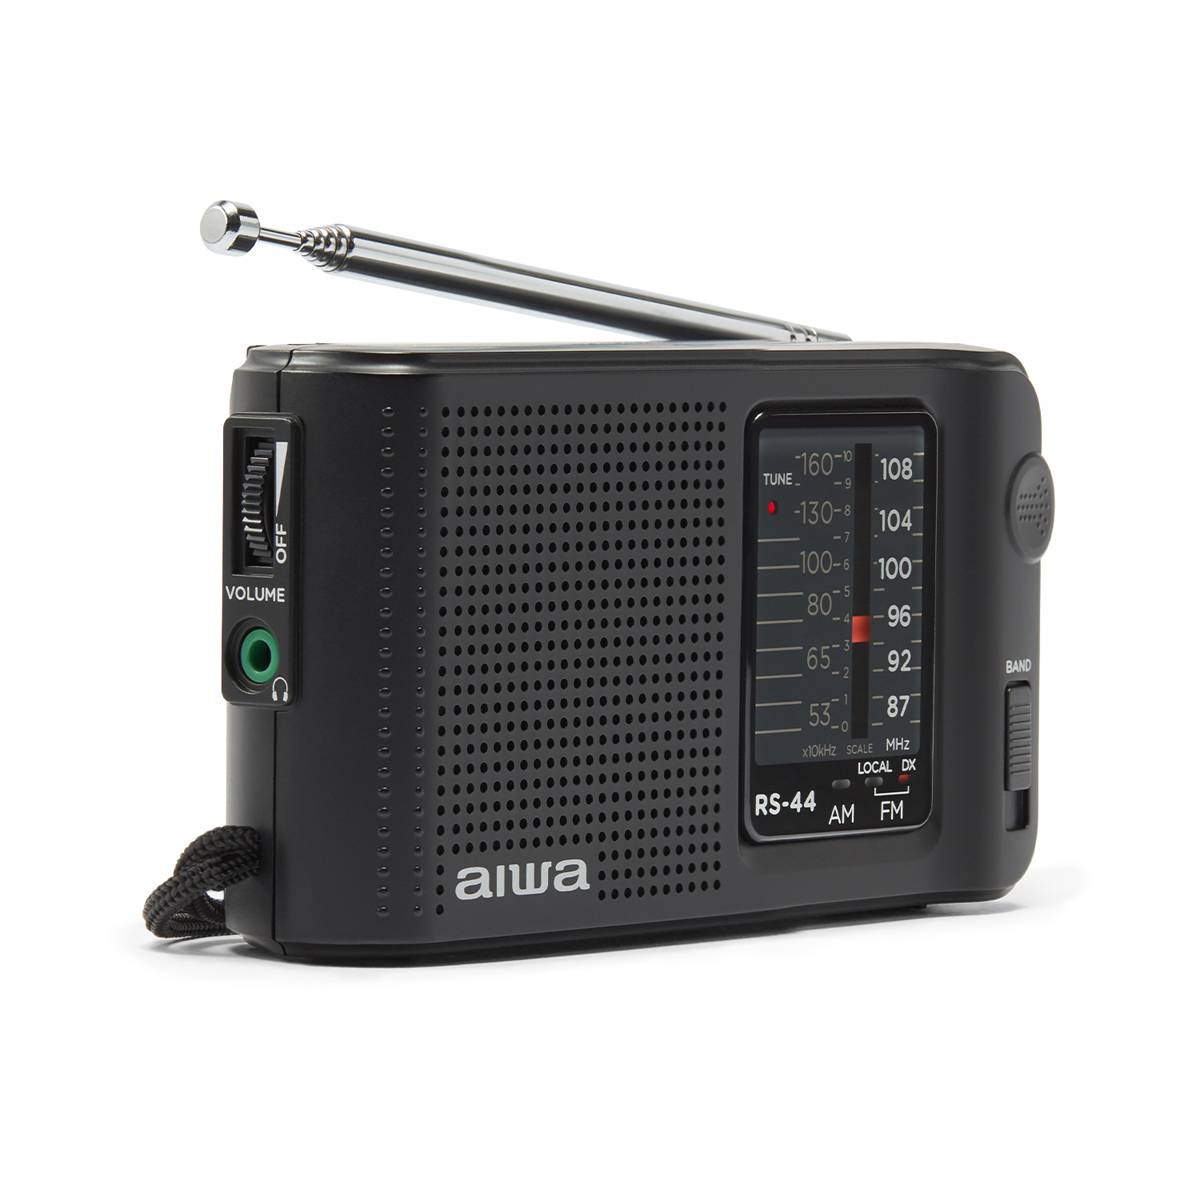 AIWA RS-44 Pocket RADIO, BLACK Radio PORTABLE FM